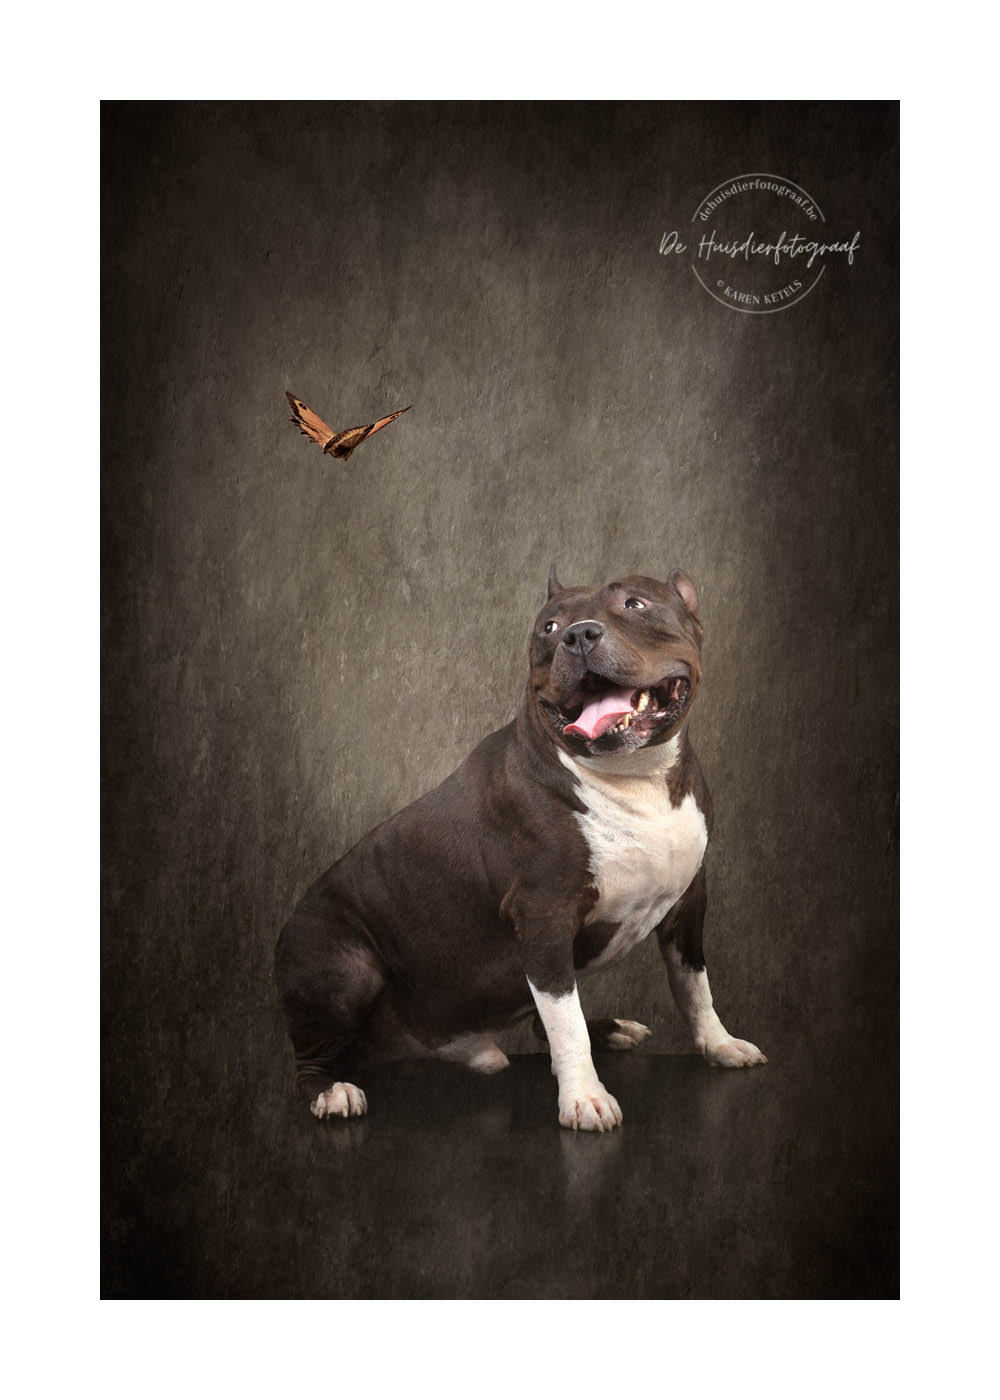 American Bull in de fotostudio voor een fine-art-portret bij De Huisdierfotograaf